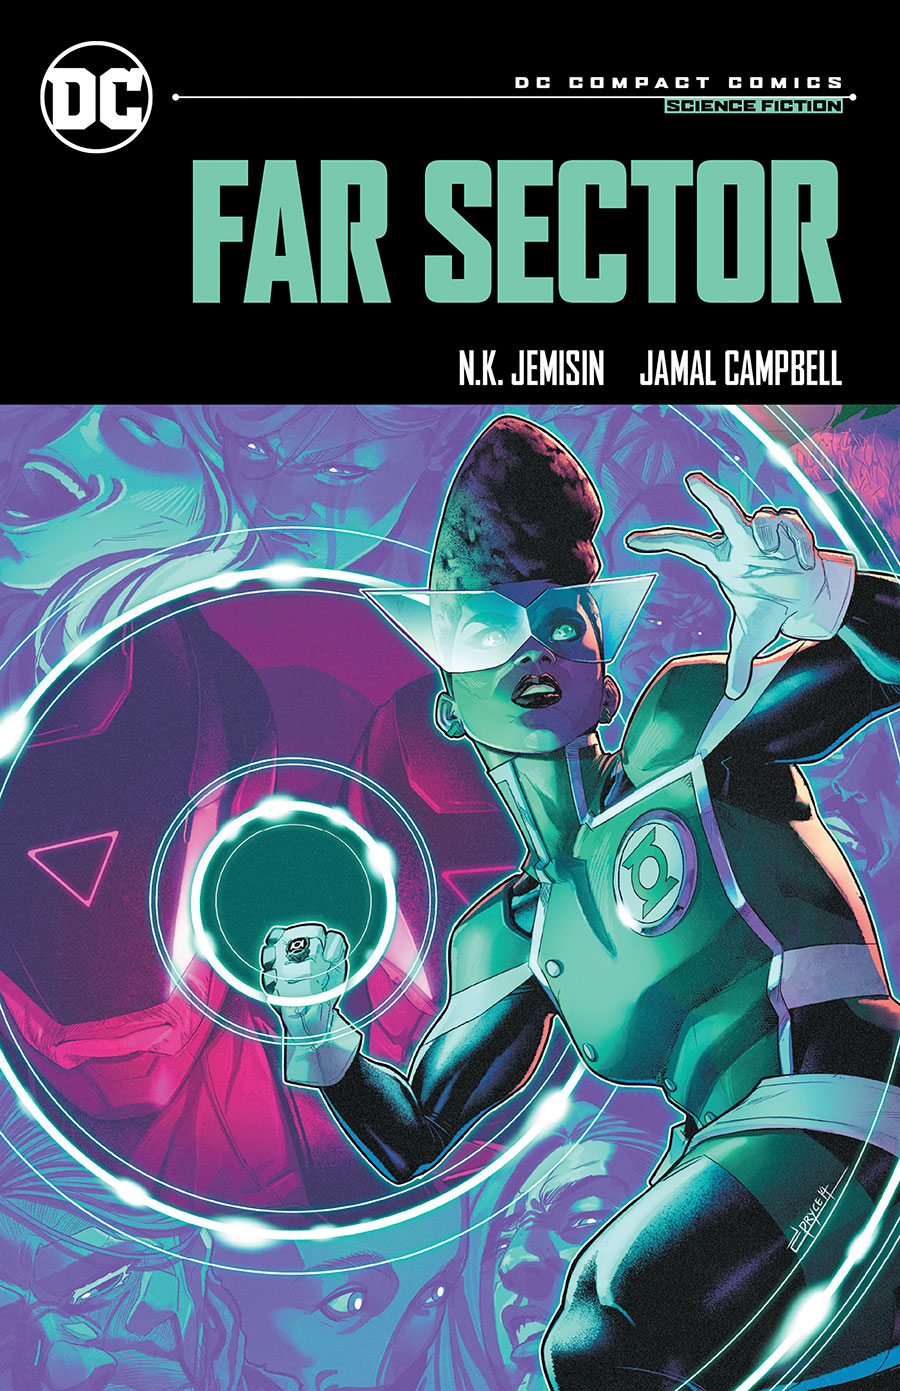 Far Sector TP (DC Compact Comics Edition)